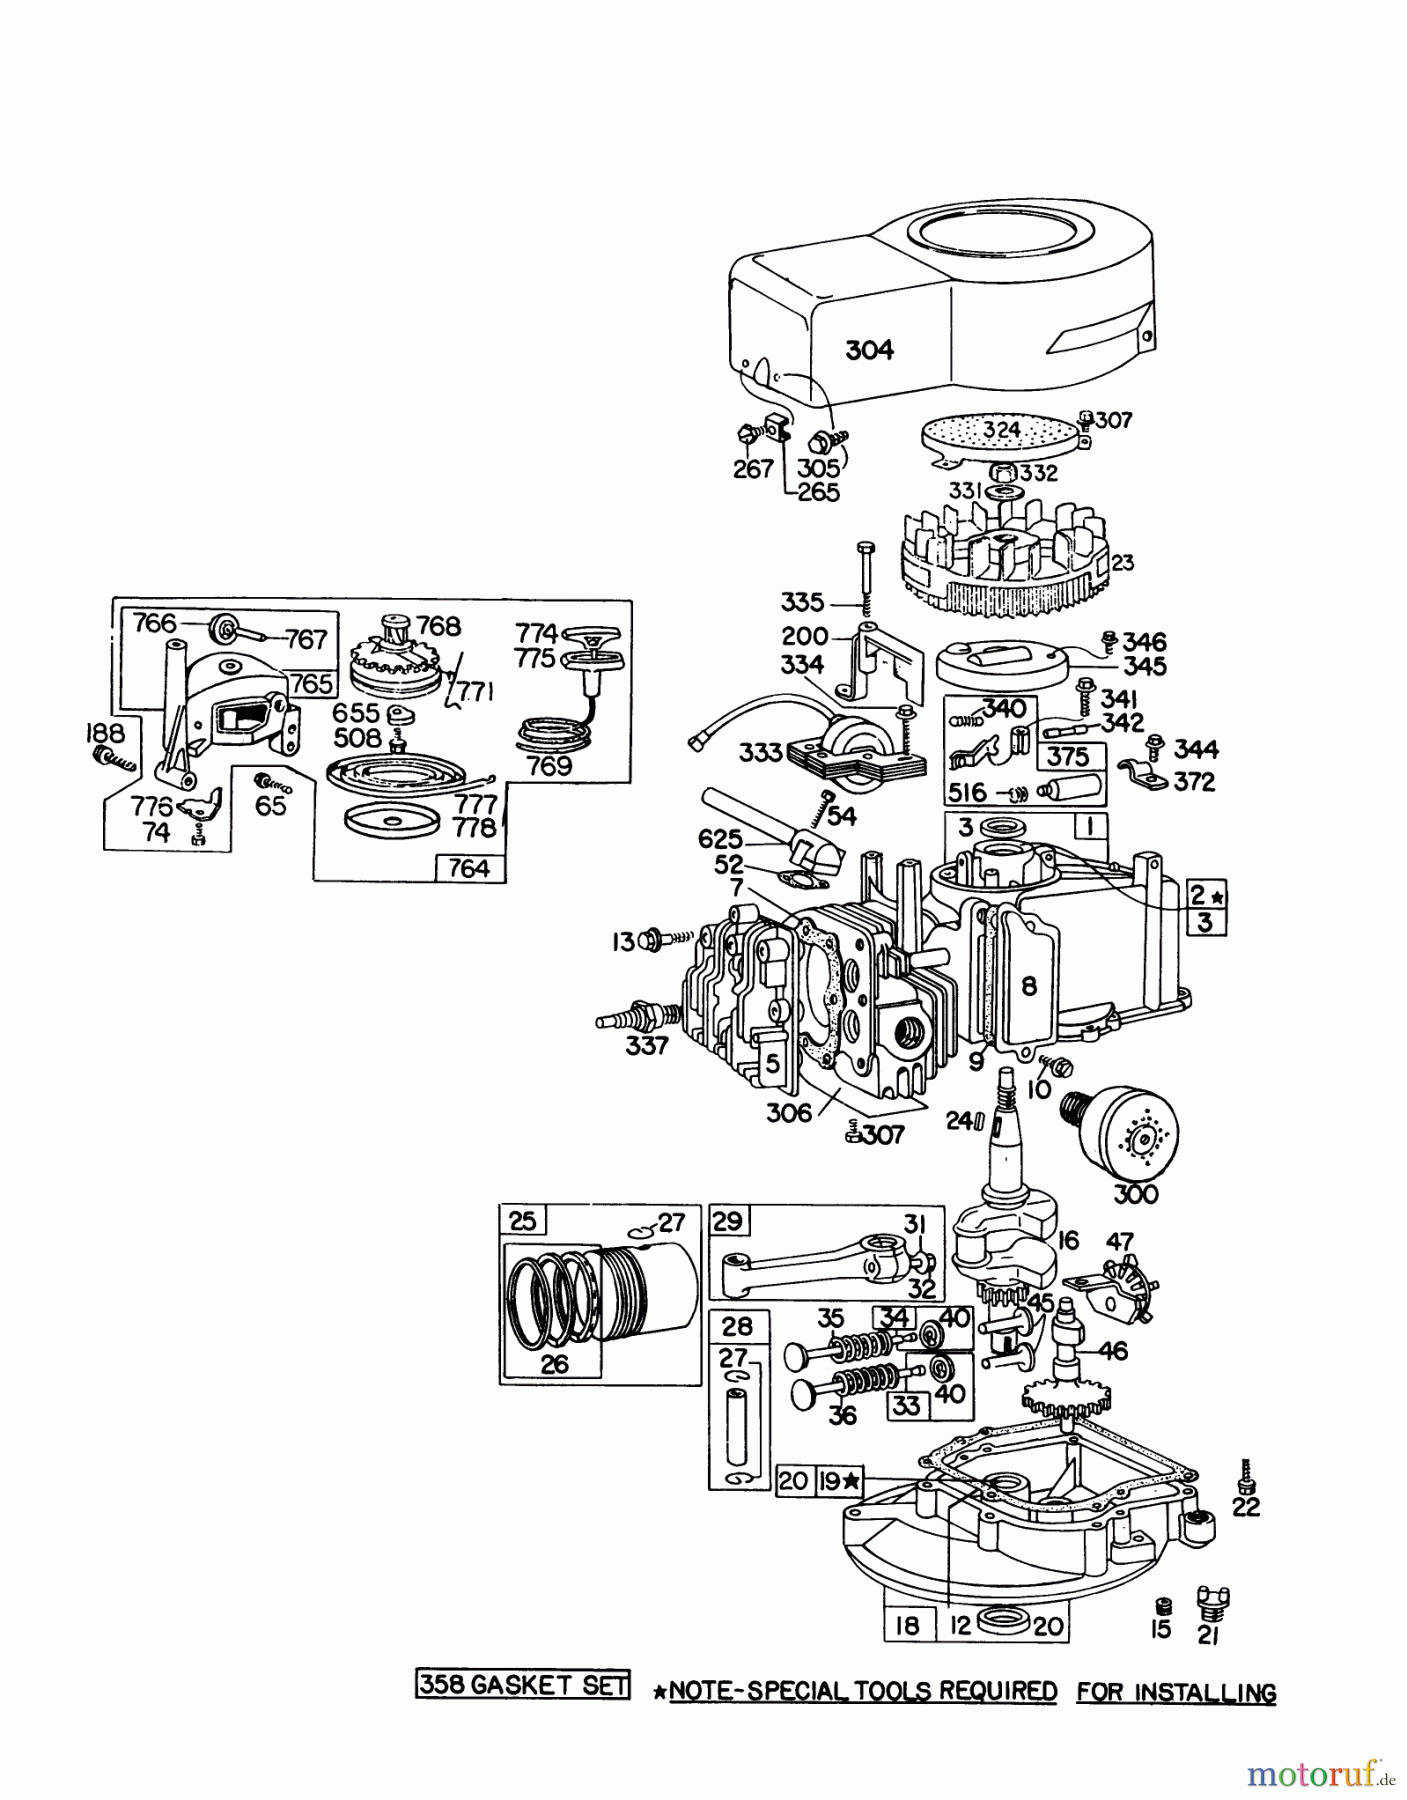  Toro Neu Mowers, Walk-Behind Seite 1 16287 - Toro Whirlwind II Lawnmower, 1977 (7000001-7999999) ENGINE BRIGGS & STRATTON MODEL 92908-1736-01 FOR 21